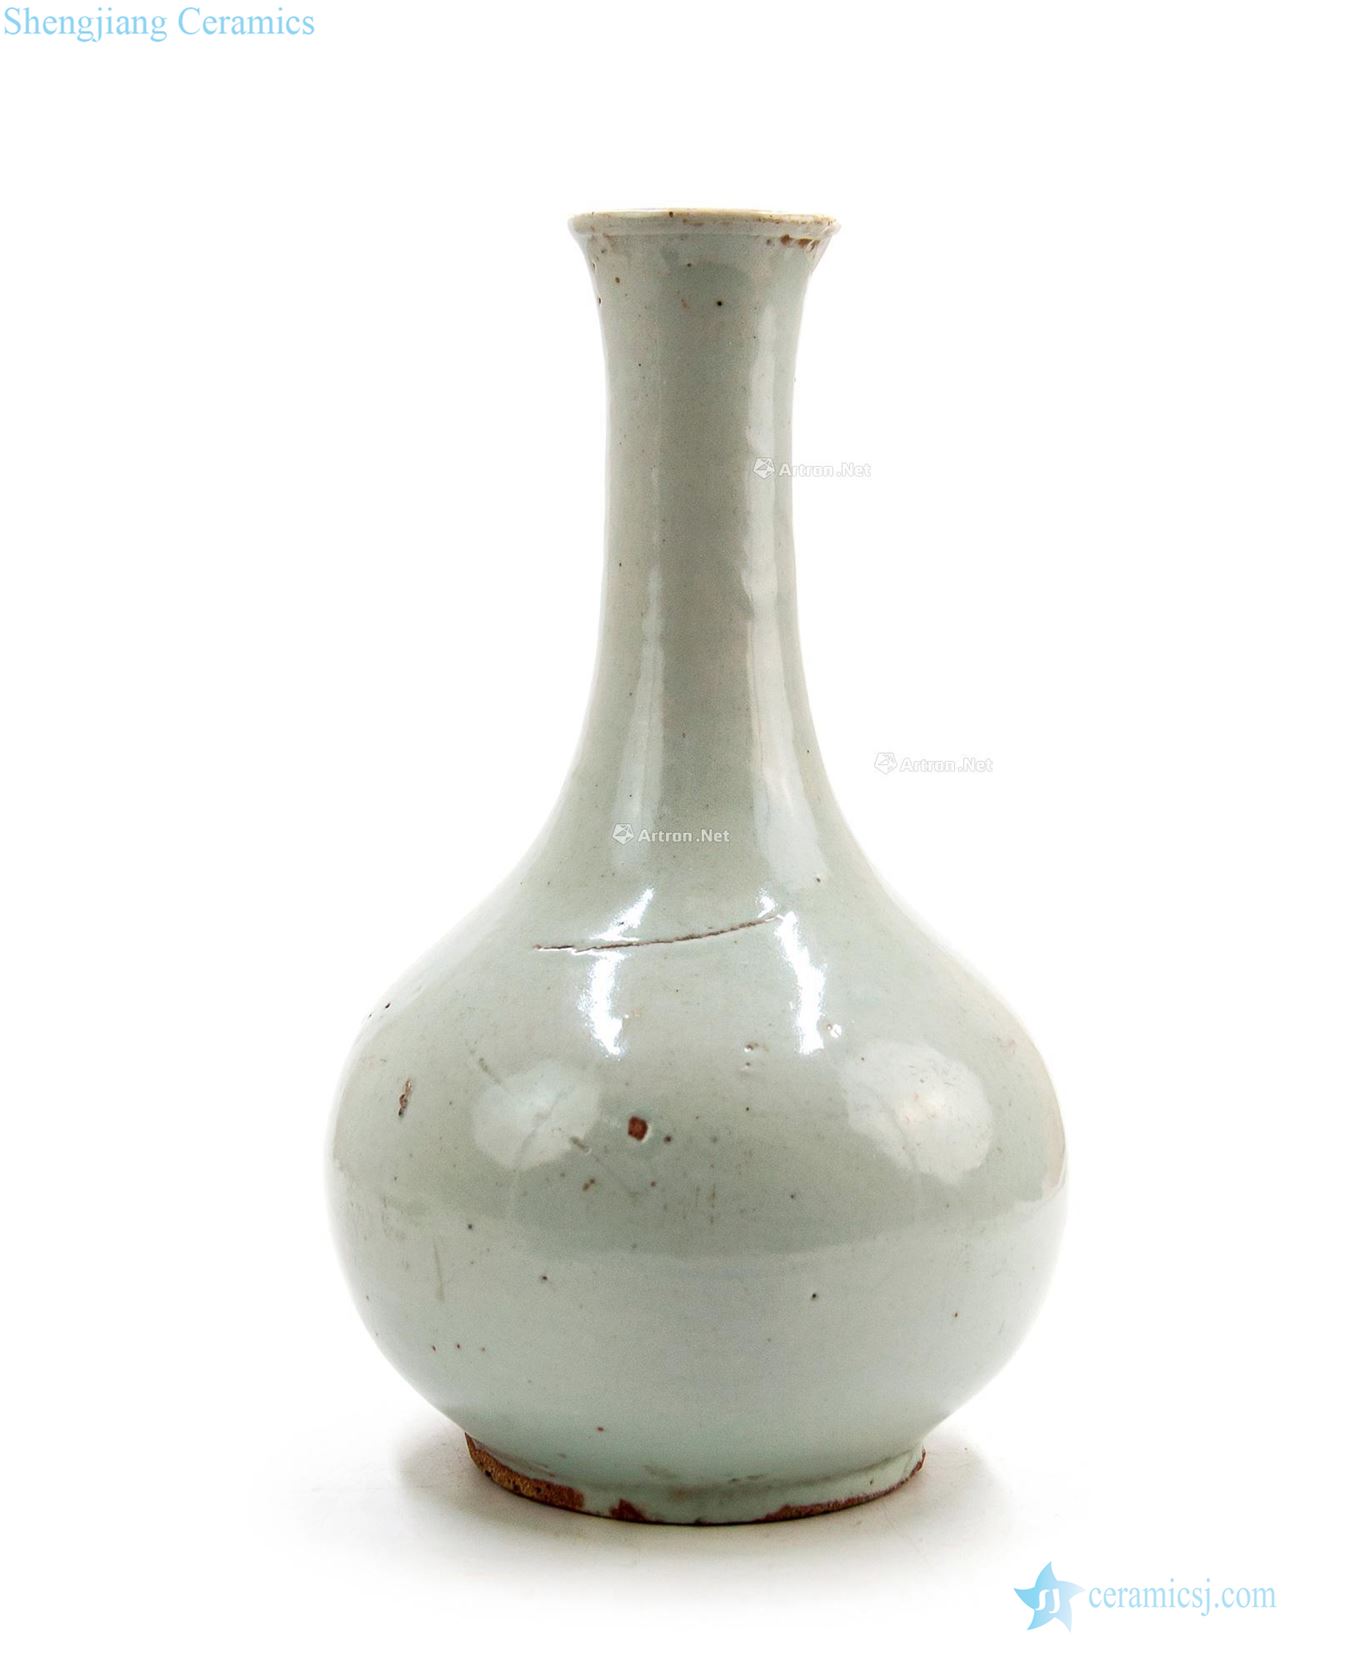 Chosun dynasty (1392-1910), white glaze gall bladder